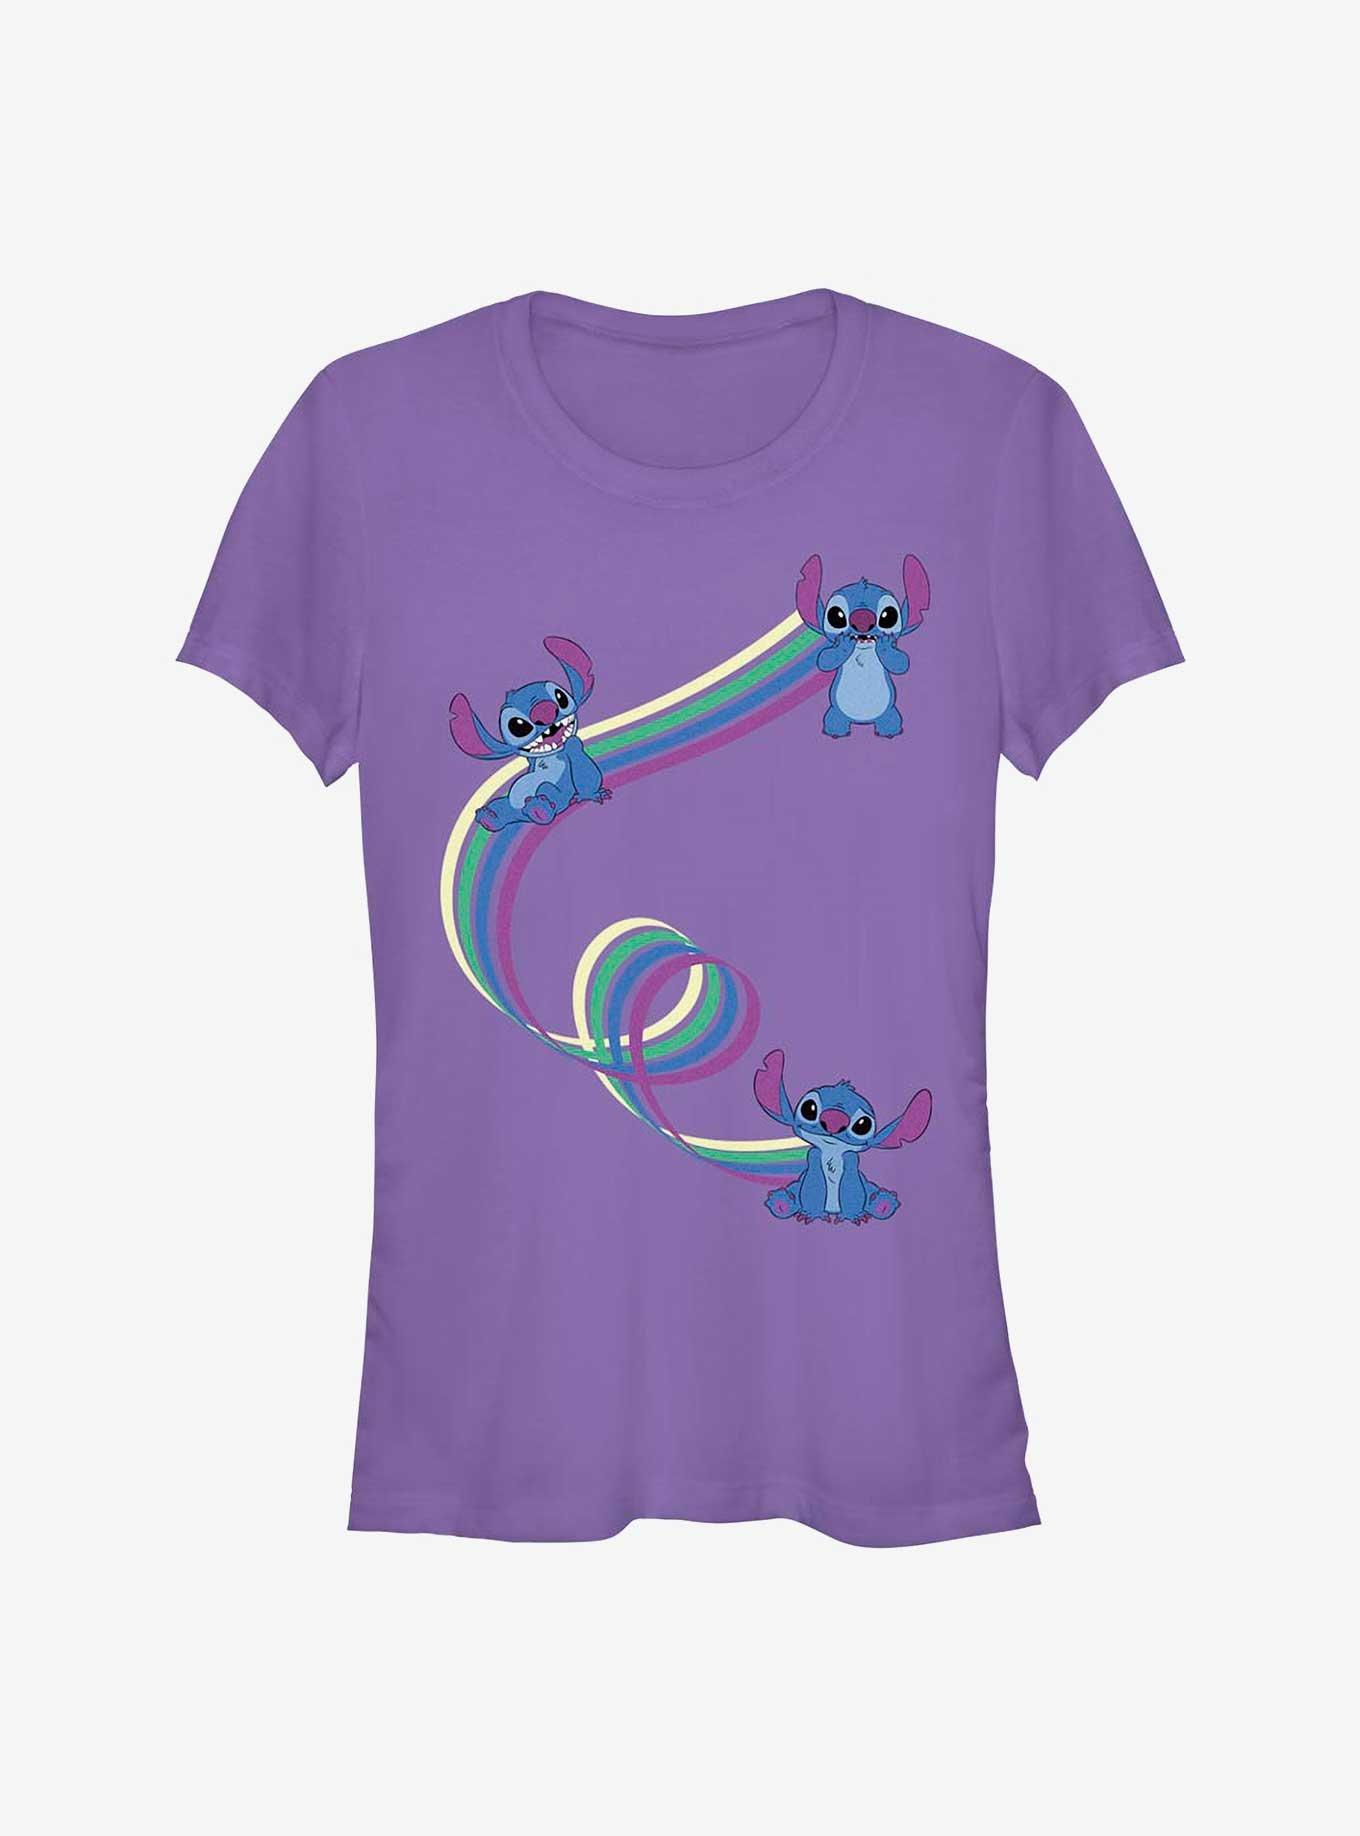 Disney Lilo & Stitch Ribbon Stitches Girls T-Shirt